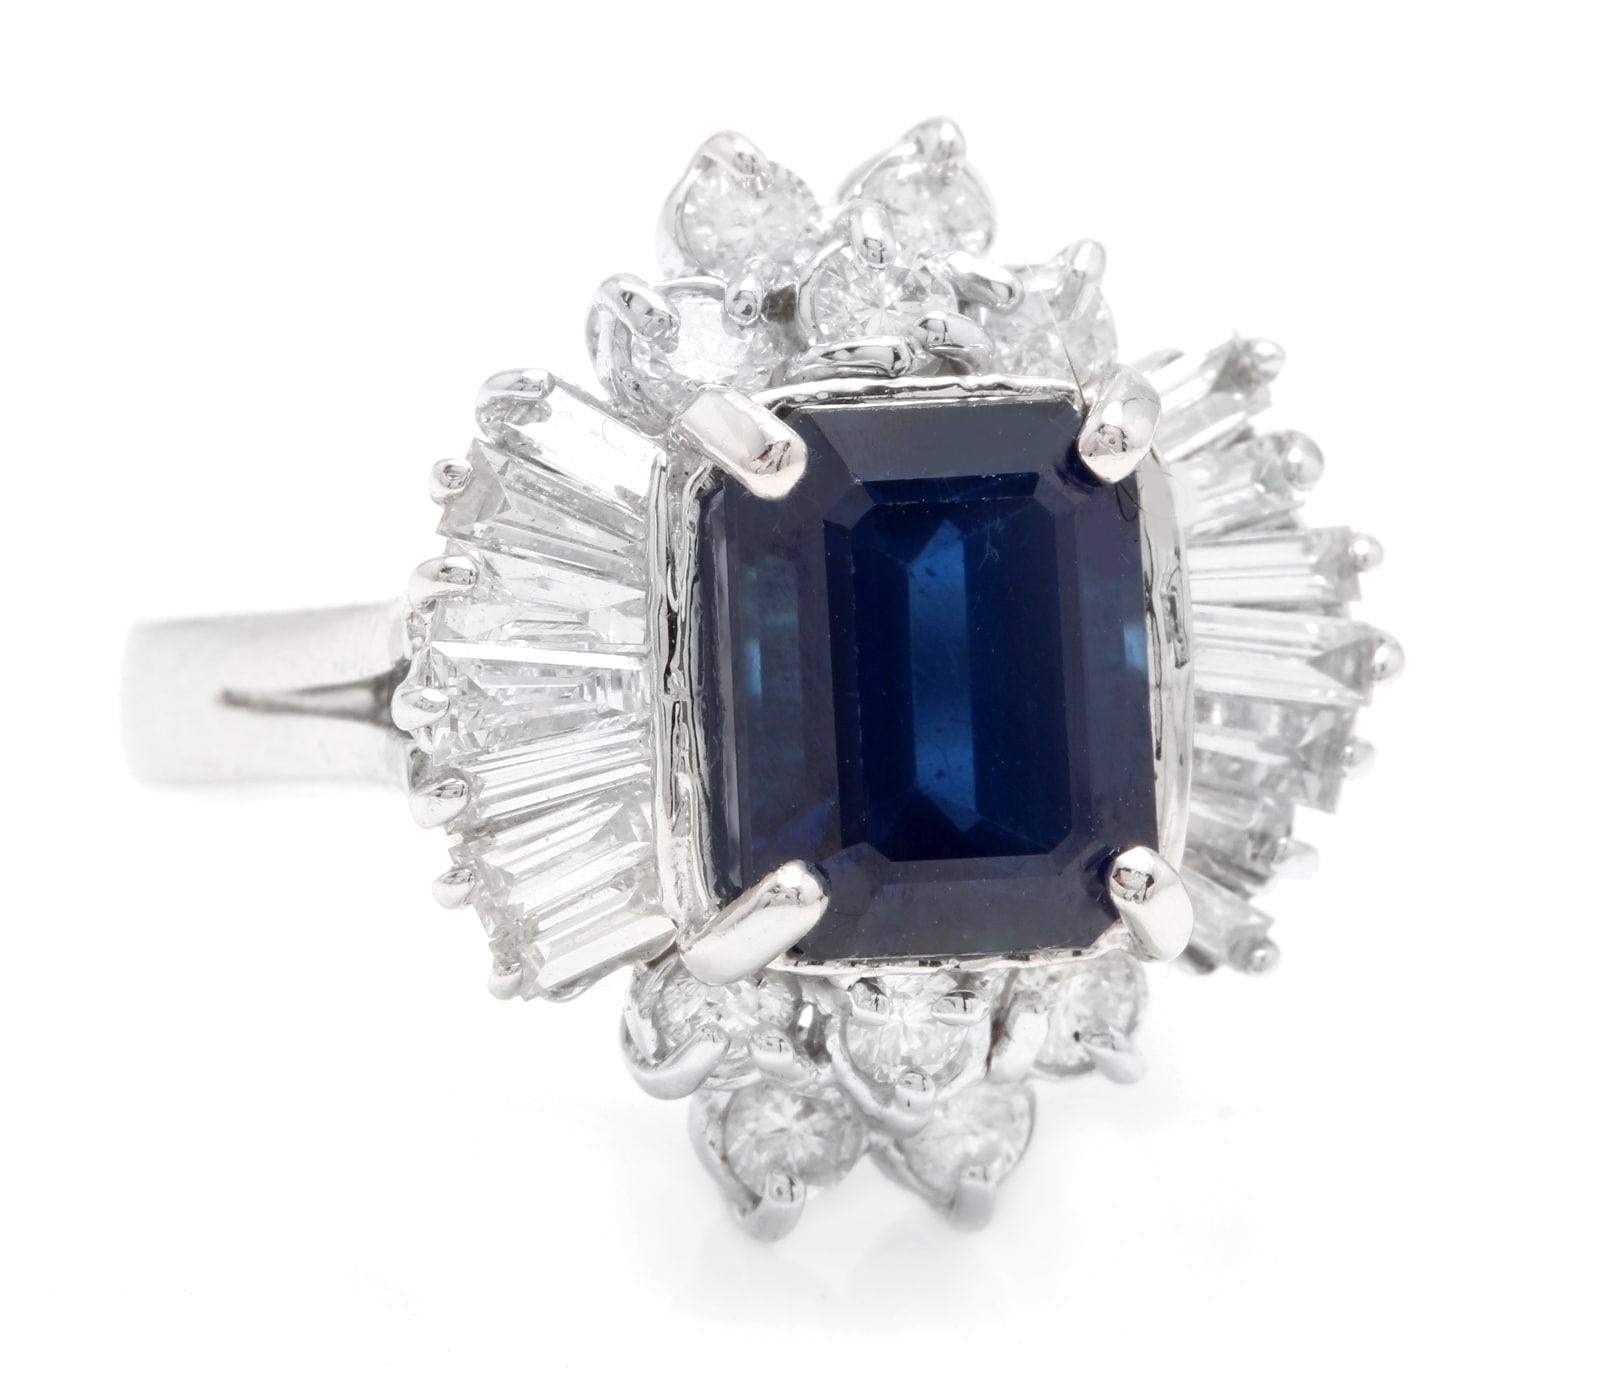 5.04 Karat Exquisite natürlichen blauen Saphir und Diamant 14K Solid White Gold Ring

Gesamtgewicht des blauen Saphirs ist: Ca. 3,50 Karat

Saphir Maße: Ca. 9.00 x 7.00mm

Sapphire Behandlung: Hitze

Natürliche runde & Baguette-Diamanten Gewicht: